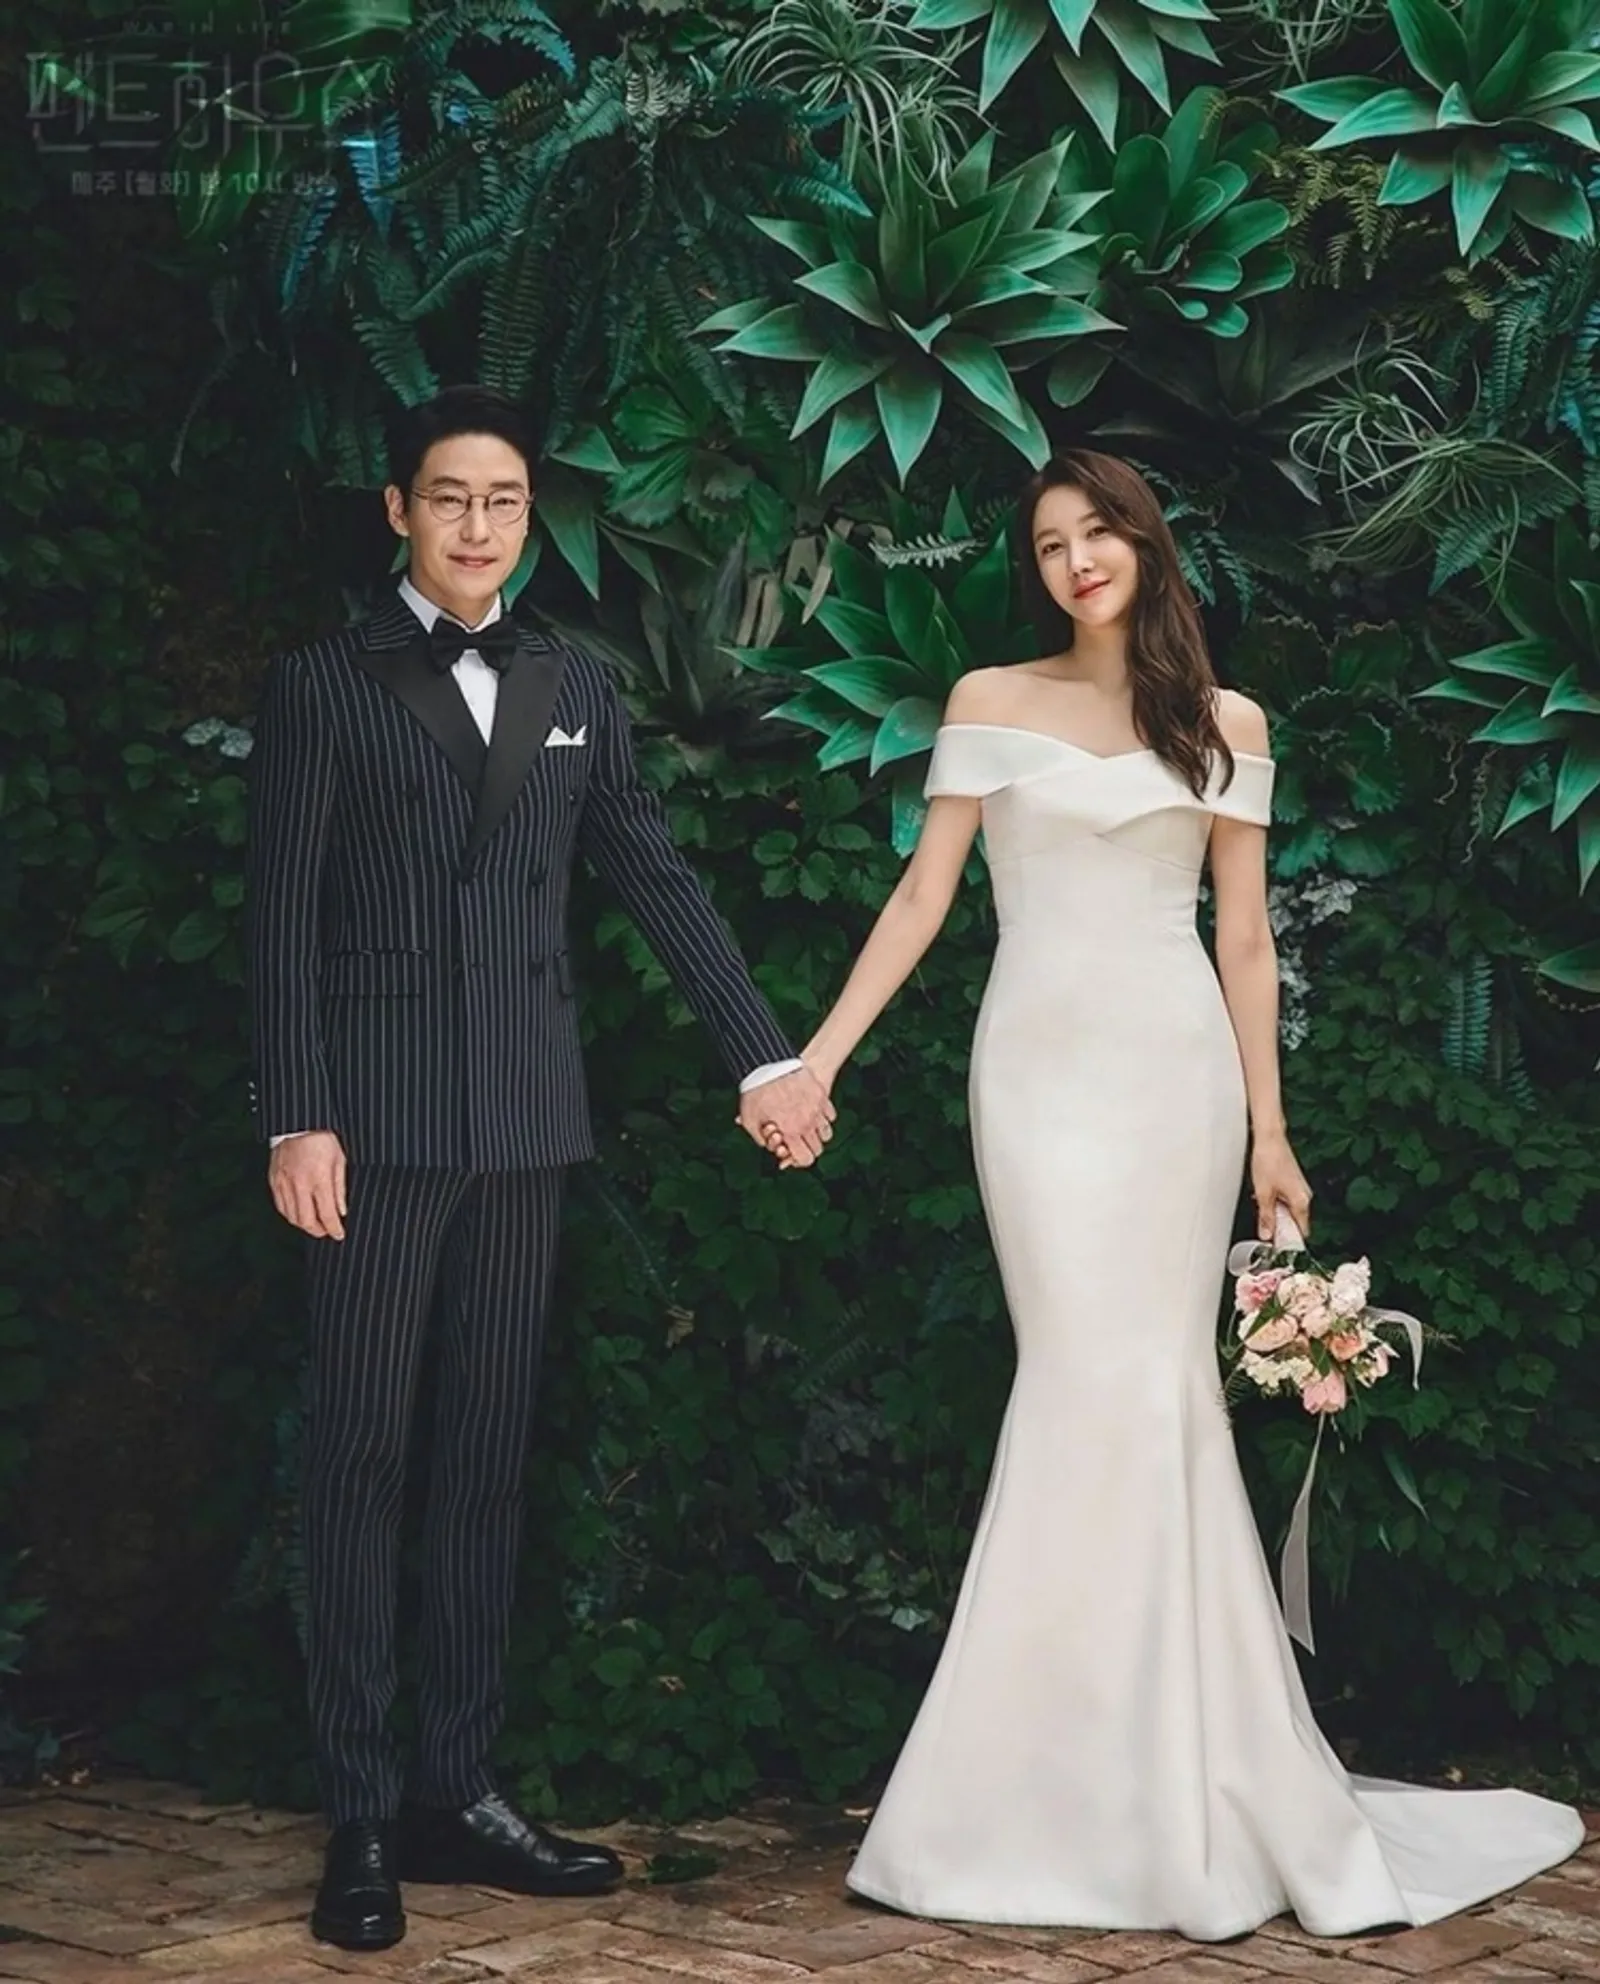 Romantis! Ini 10 Foto Pernikahan di Drama Korea yang Paling Ikonik